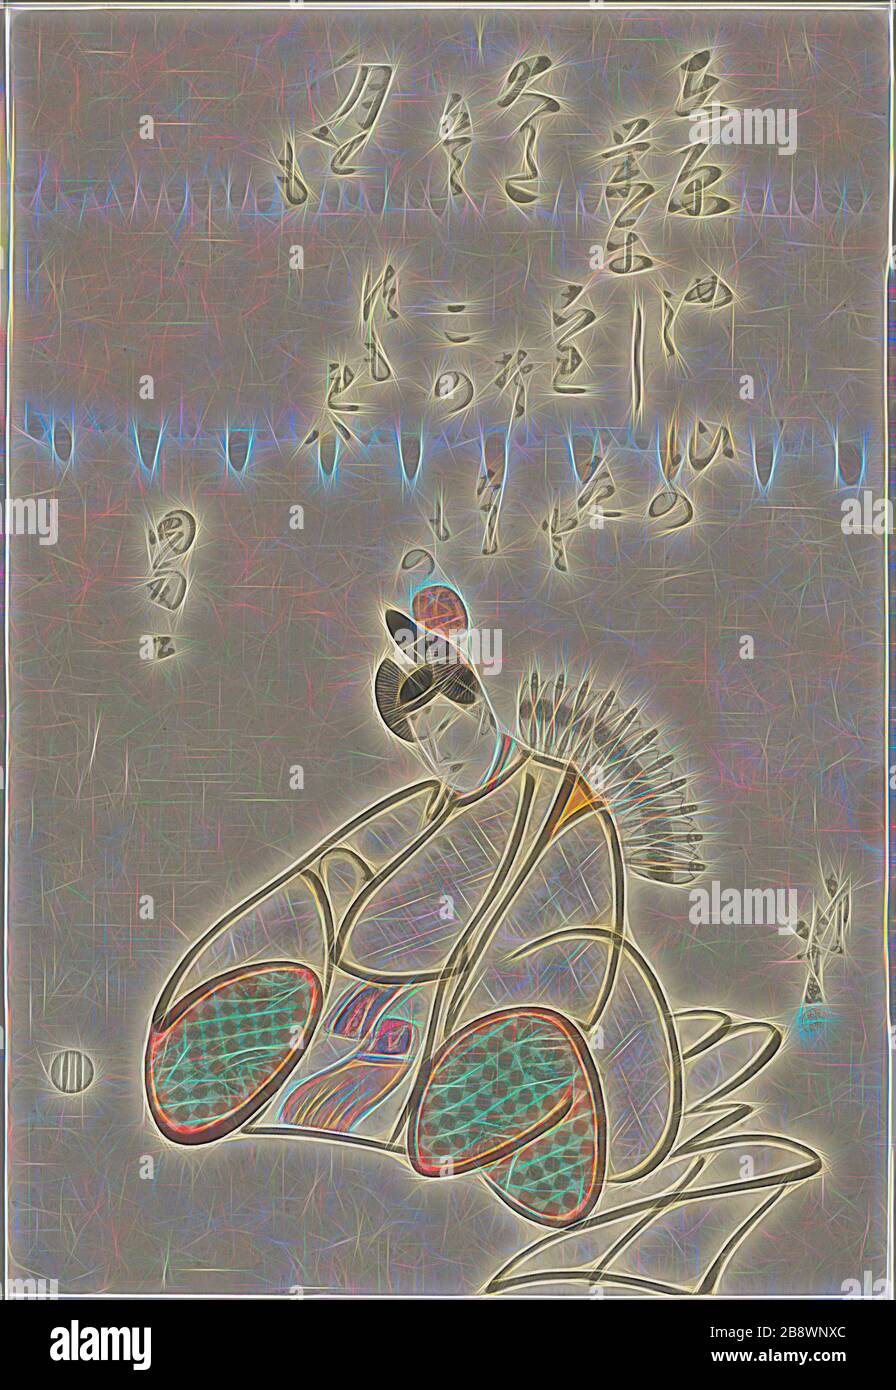 Le poète Ariwara no Narihira, de la série six Immortal Poets (Rokkasen), c. 1798, Katsushika Hokusai ?? ??, Japonais, 1760-1849, Japon, imprimé color woodblock, oban, 37,5 x 25,5 cm, repensé par Gibon, design de gaie chaleureuse de luminosité et de rayonnement de lumière. L'art classique réinventé avec une touche moderne. La photographie inspirée du futurisme, qui embrasse l'énergie dynamique de la technologie moderne, du mouvement, de la vitesse et révolutionne la culture. Banque D'Images